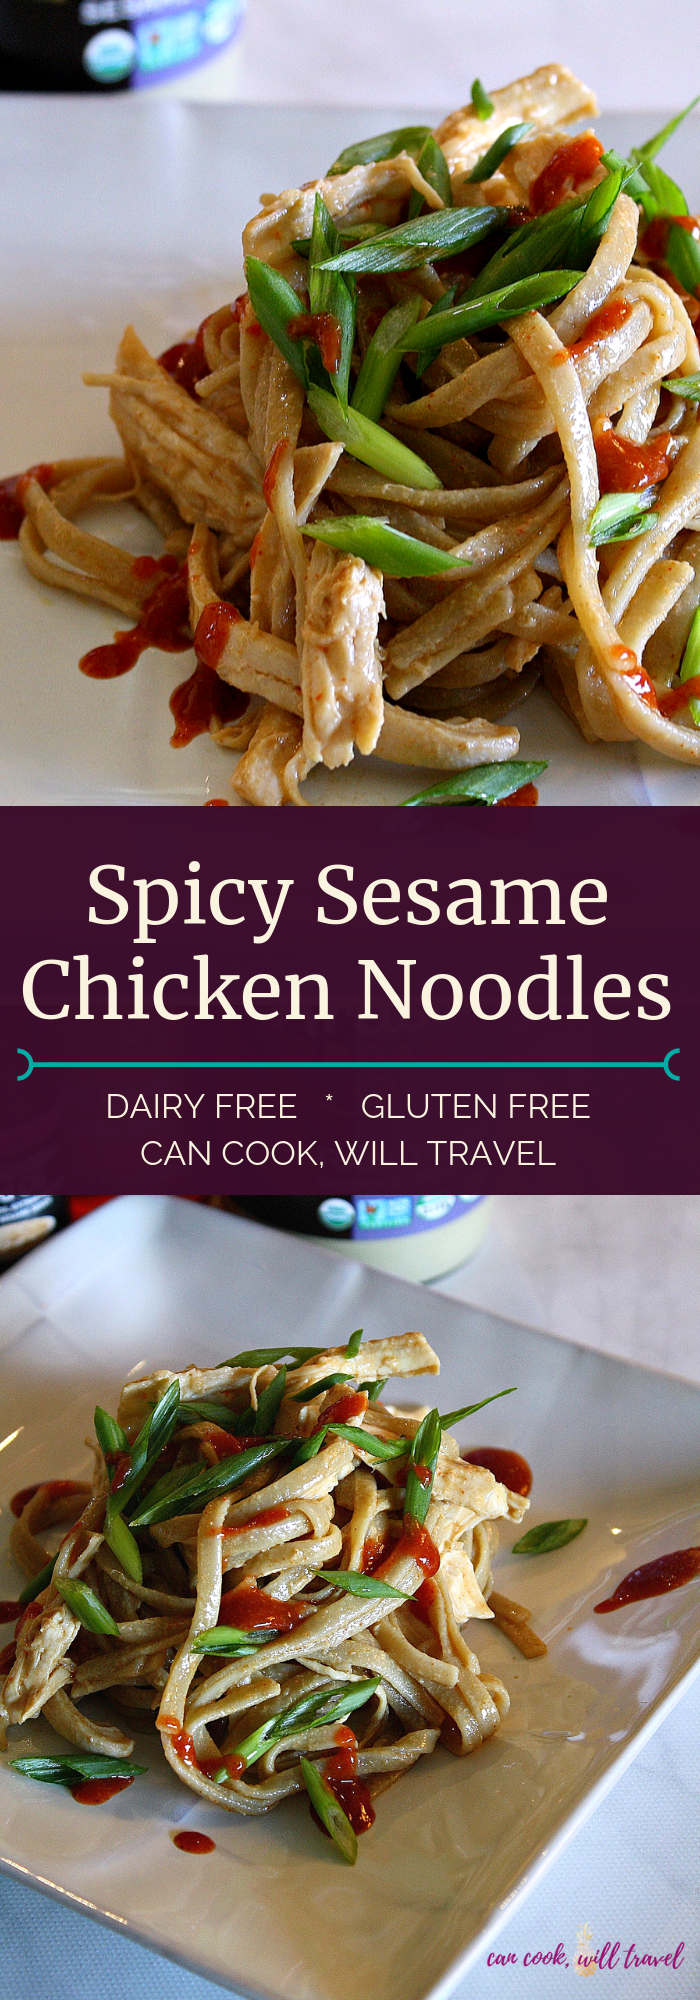 Spicy Sesame Chicken Noodles_Collage1